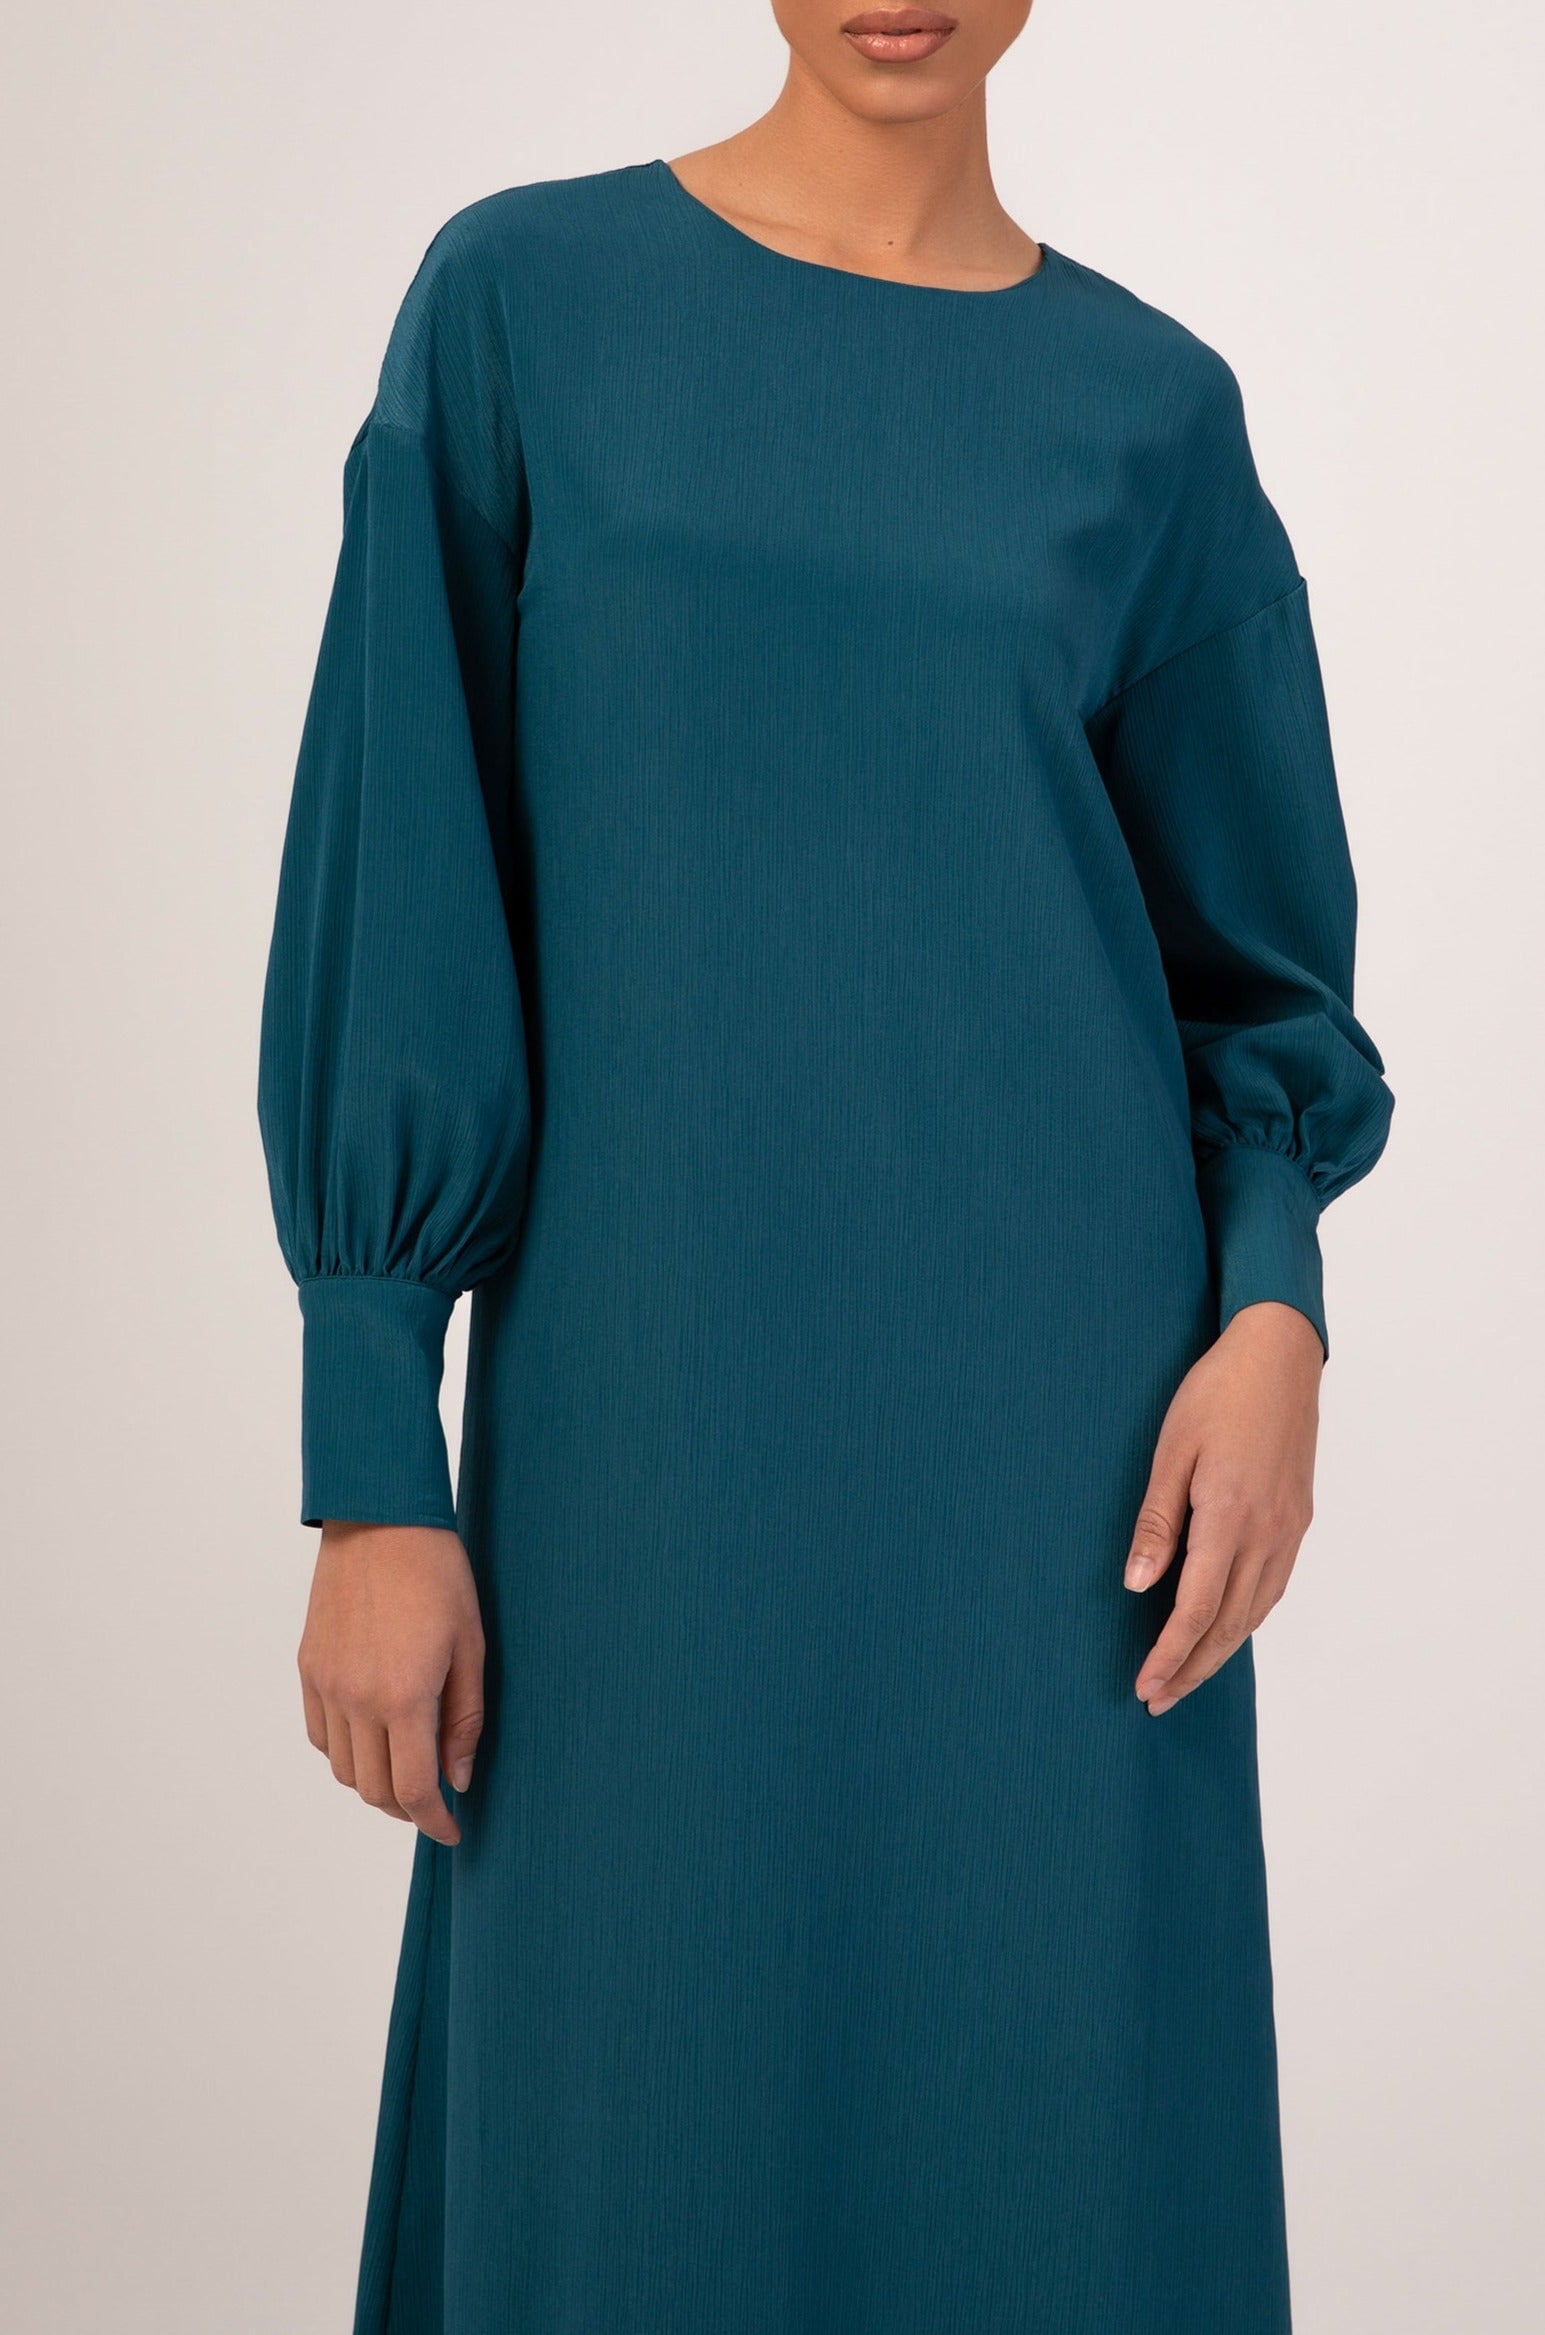 Madina Textured Maxi Dress - Blue Veiled 